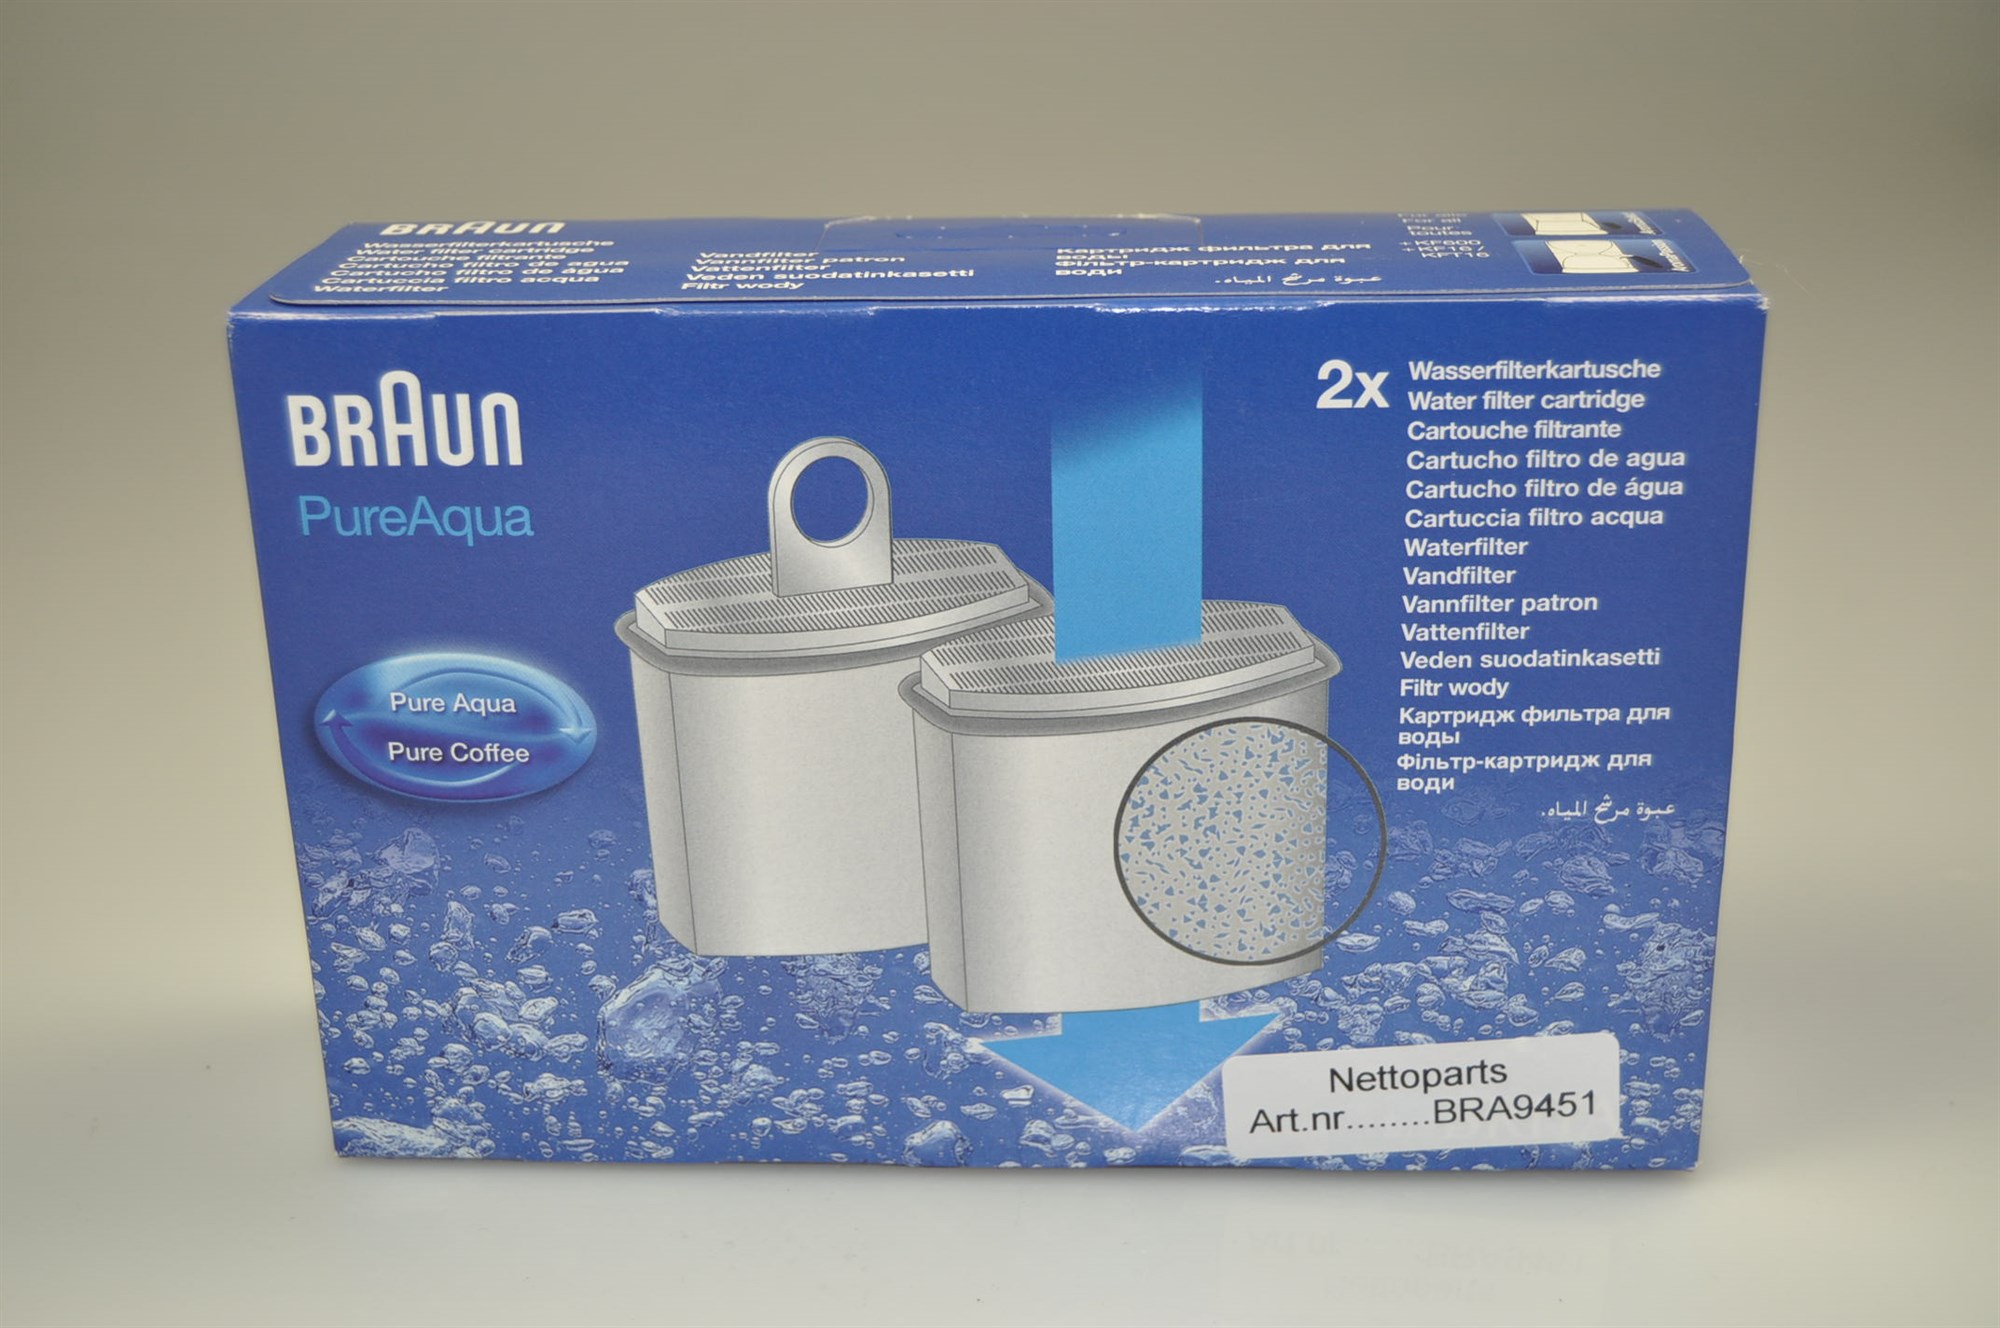 Фильтр брауна. Braun 3104 фильтр для воды. Водный фильтр Браун 3104. Braun 3104 кофеварка фильтр для воды. Фильтр для воды Pure Aqua Braun.